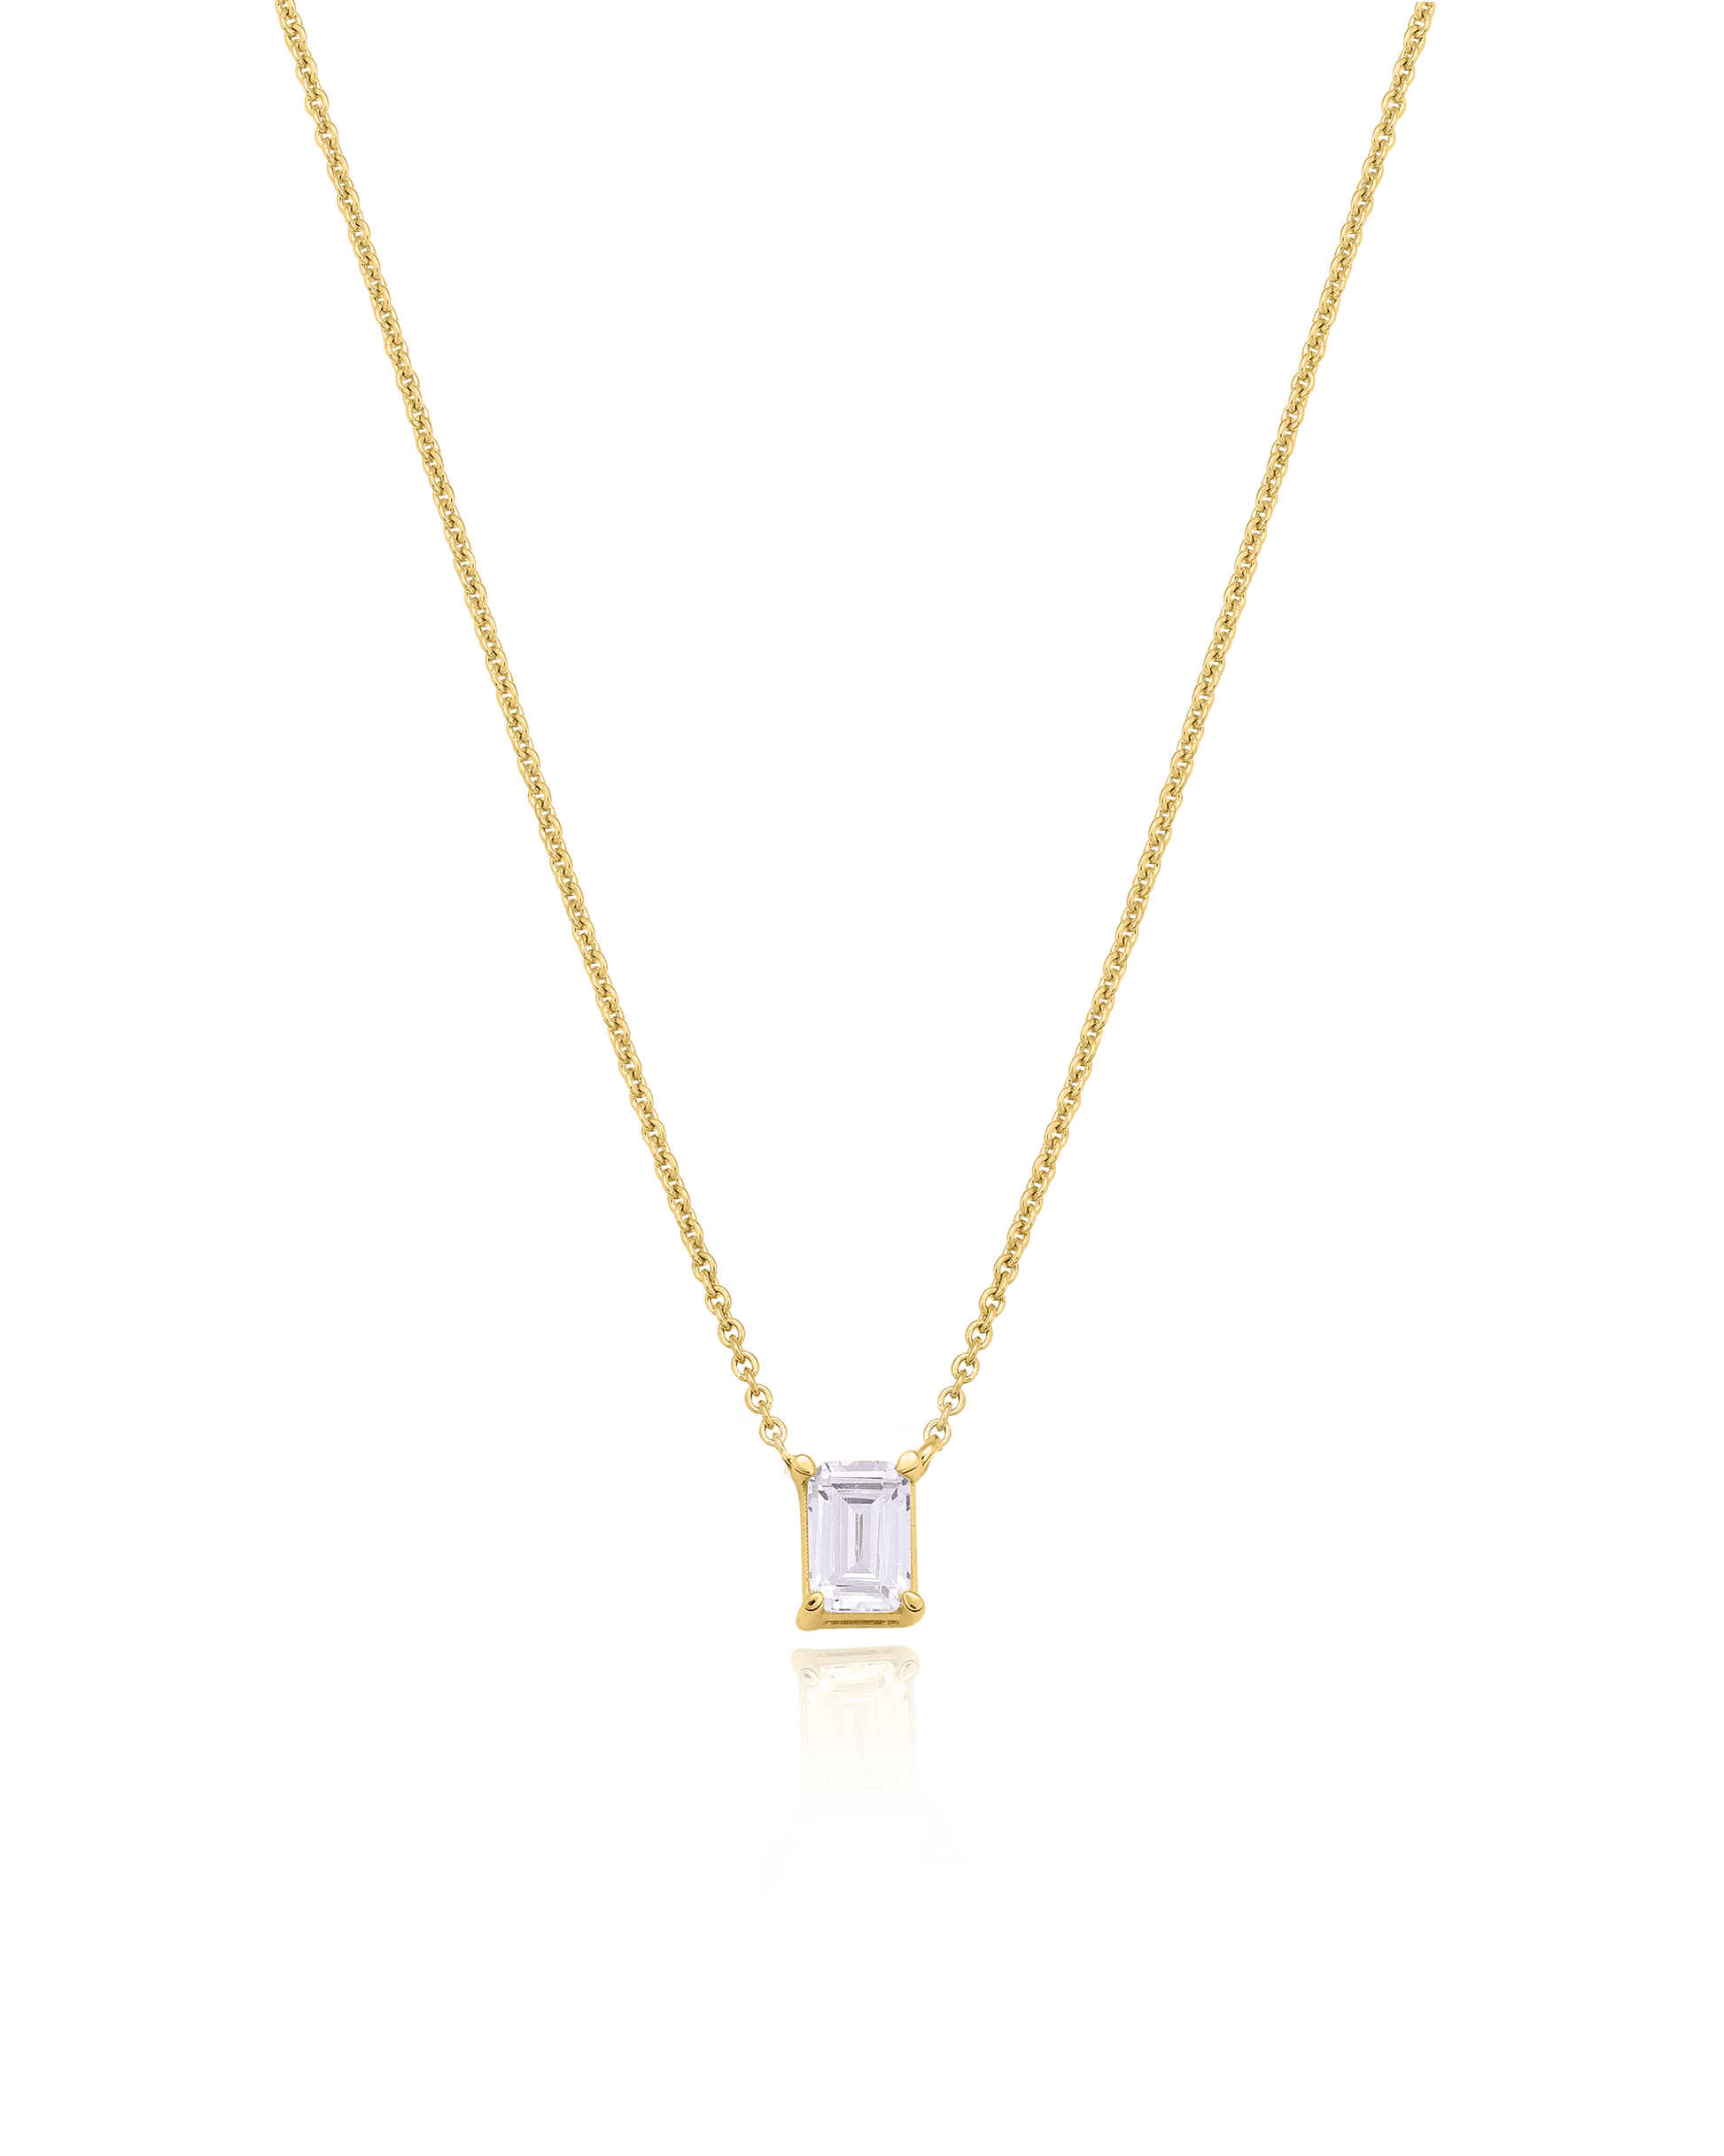 Emerald Solitaire Diamond Necklace - 18K Gold Vermeil Necklaces magal-dev 0.10 CT 16” 